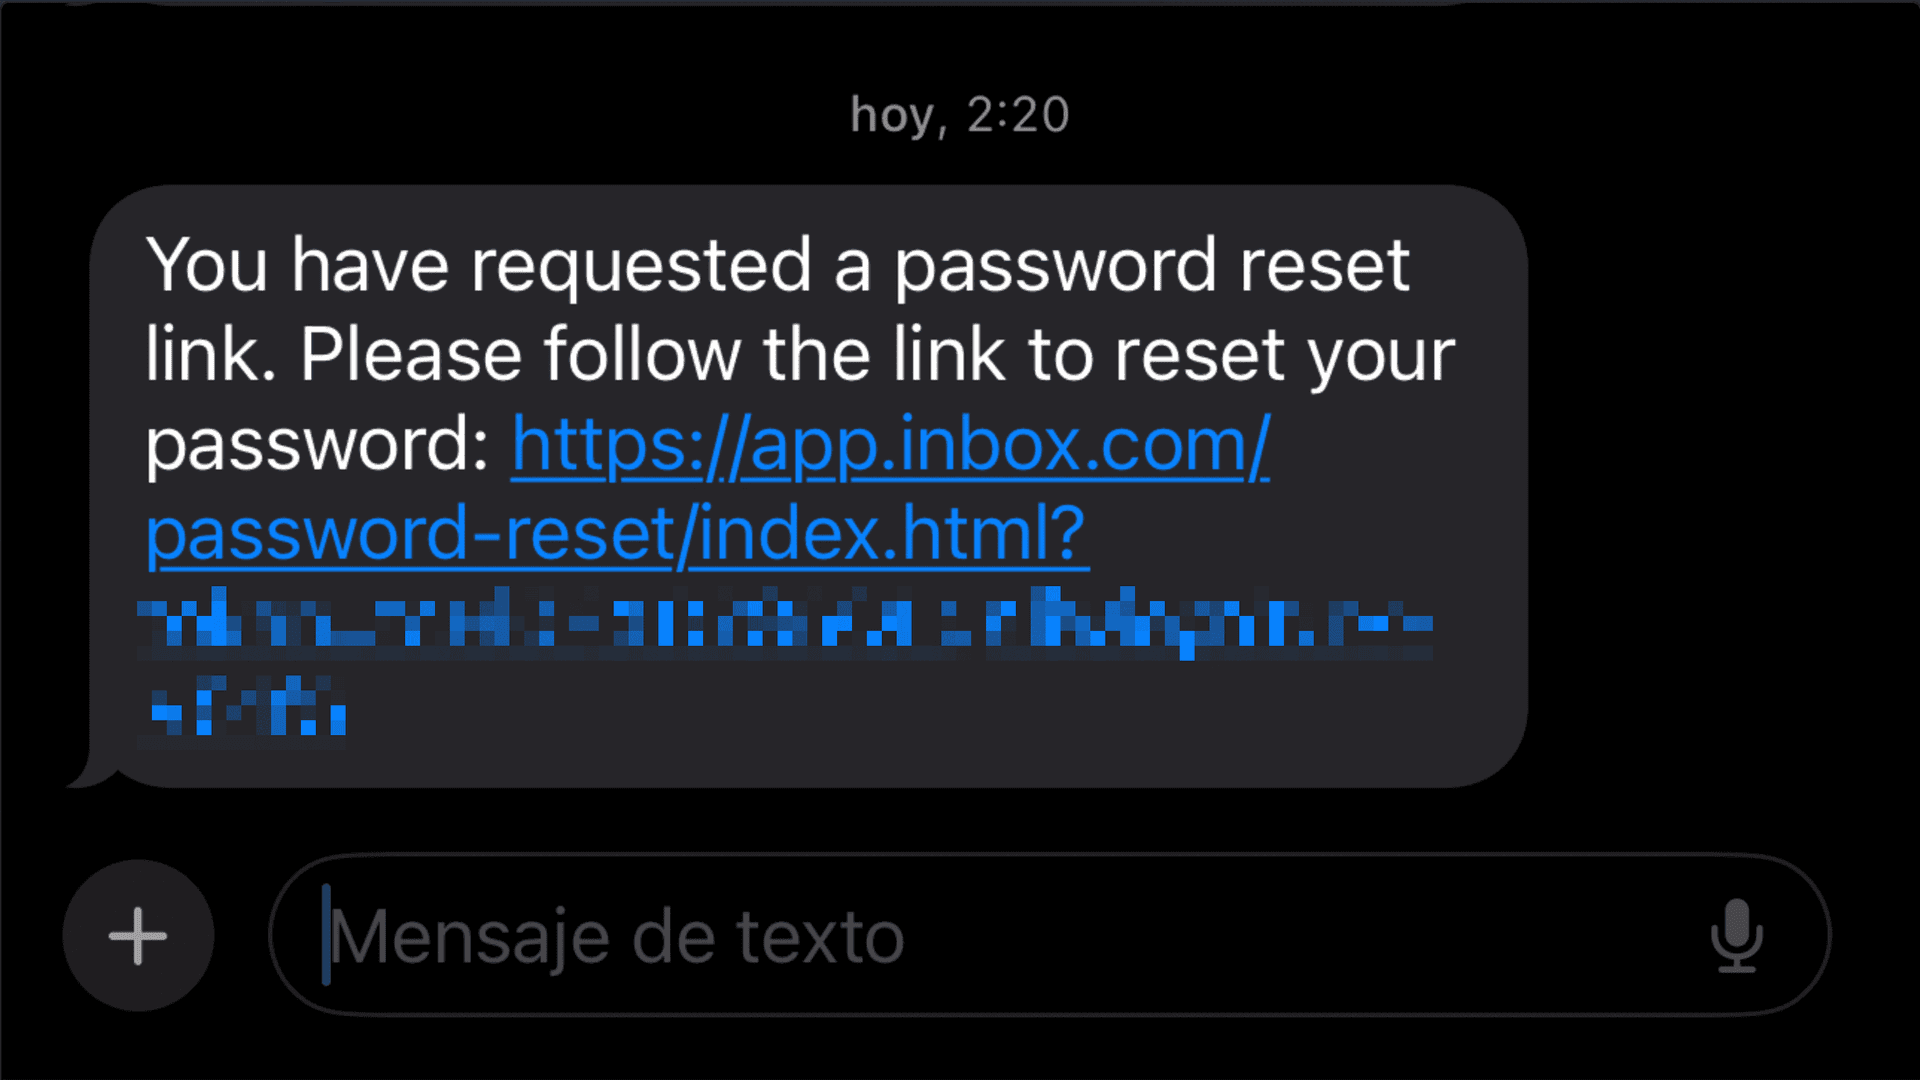 password reset link inbox.com